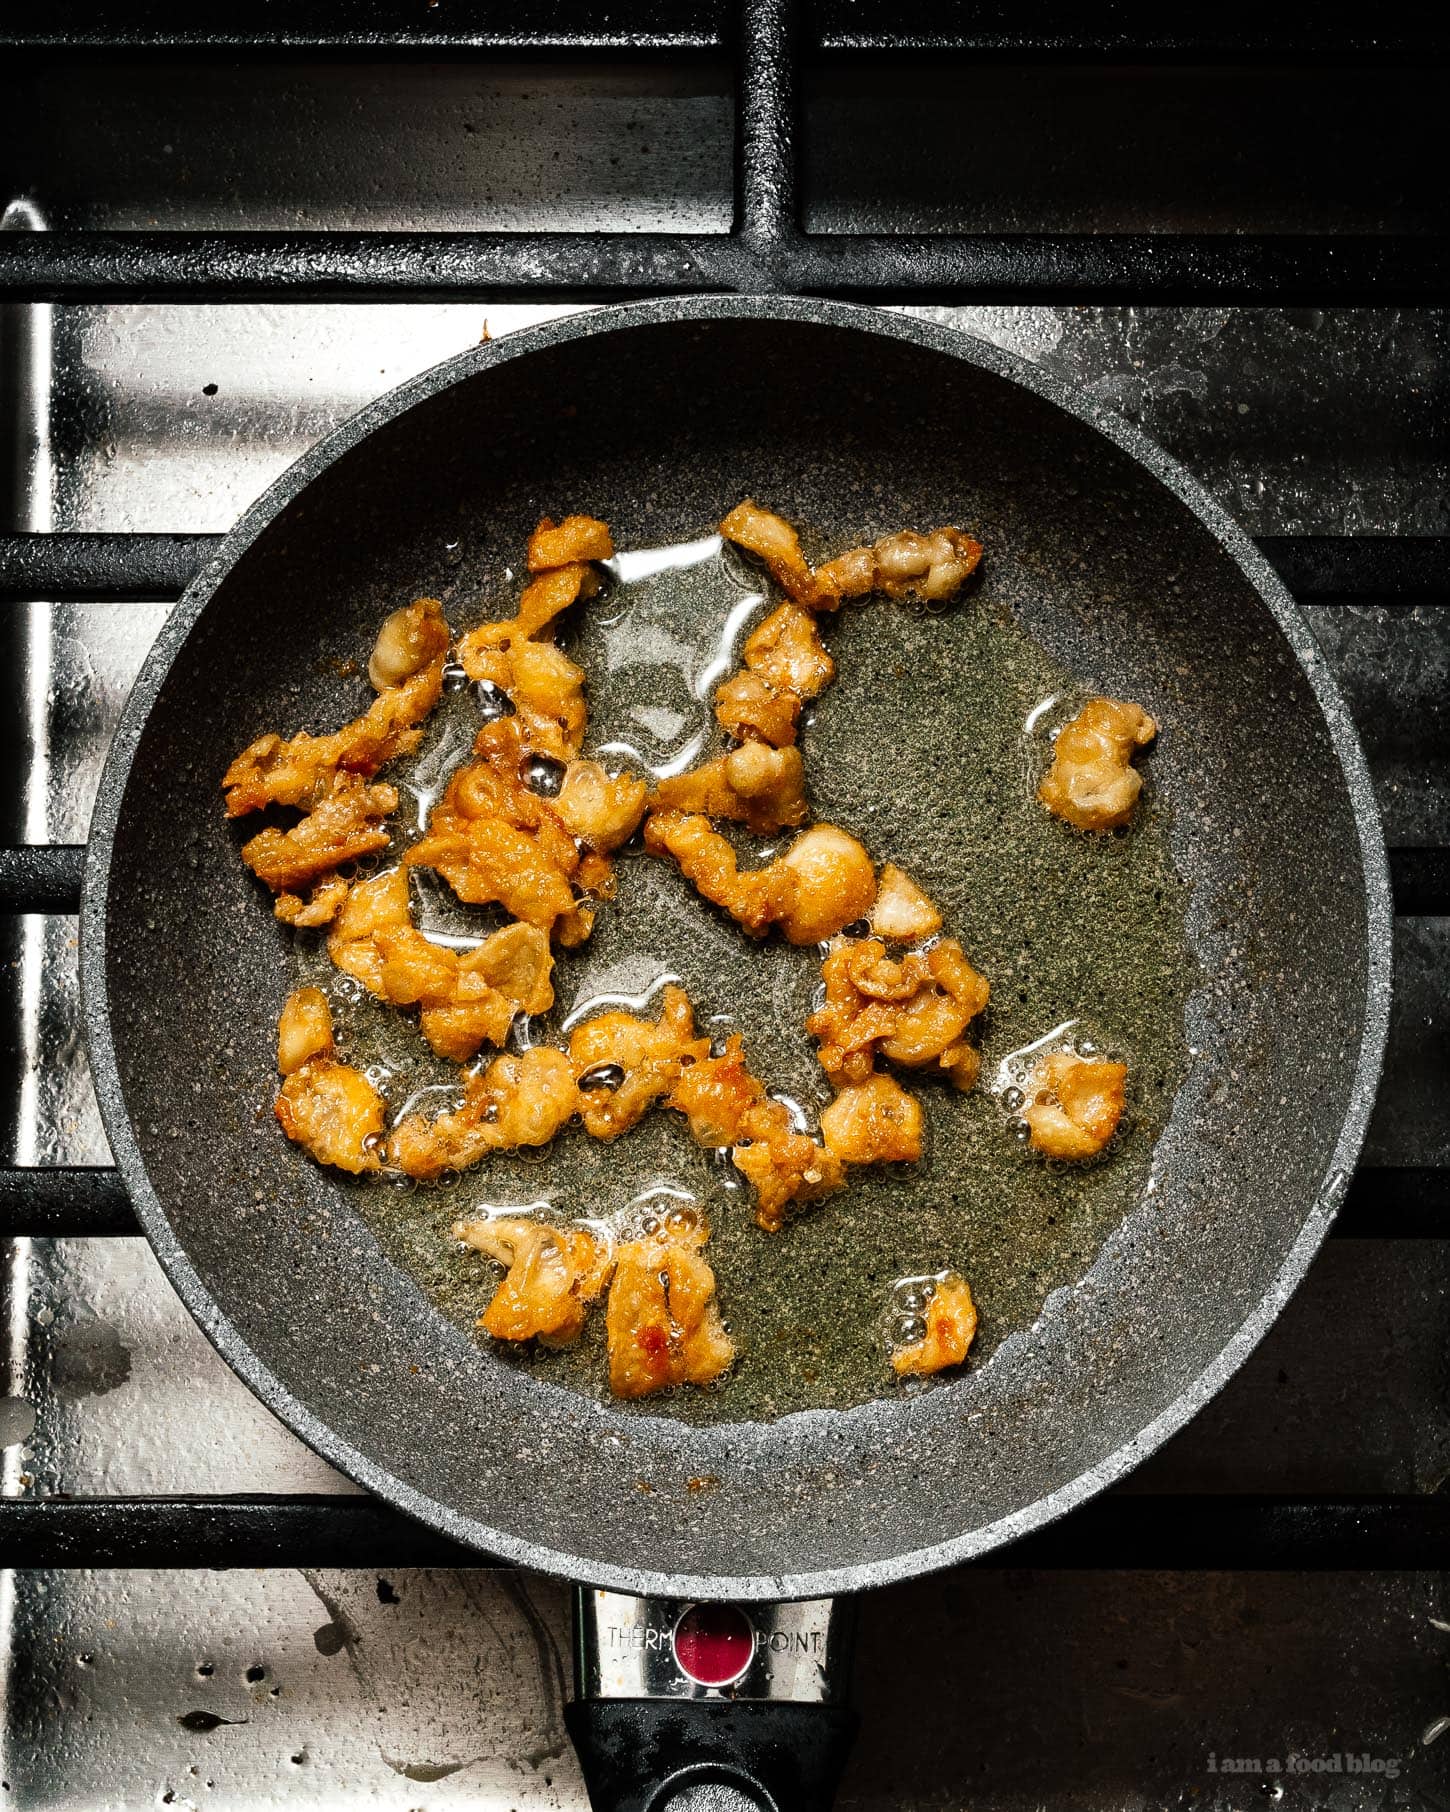 Cơm gà Hải Nam siêu đơn giản và hài lòng: gà hấp ngon ngọt và cơm gừng tỏi được nấu trong cùng một nồi.  Đó là những gì bạn muốn cho bữa tối, ngay bây giờ!  #hainanesechickenrice #chickenrice #recipes #dinner #onepot #easy #chickenrecipe #rice #chickenandrice